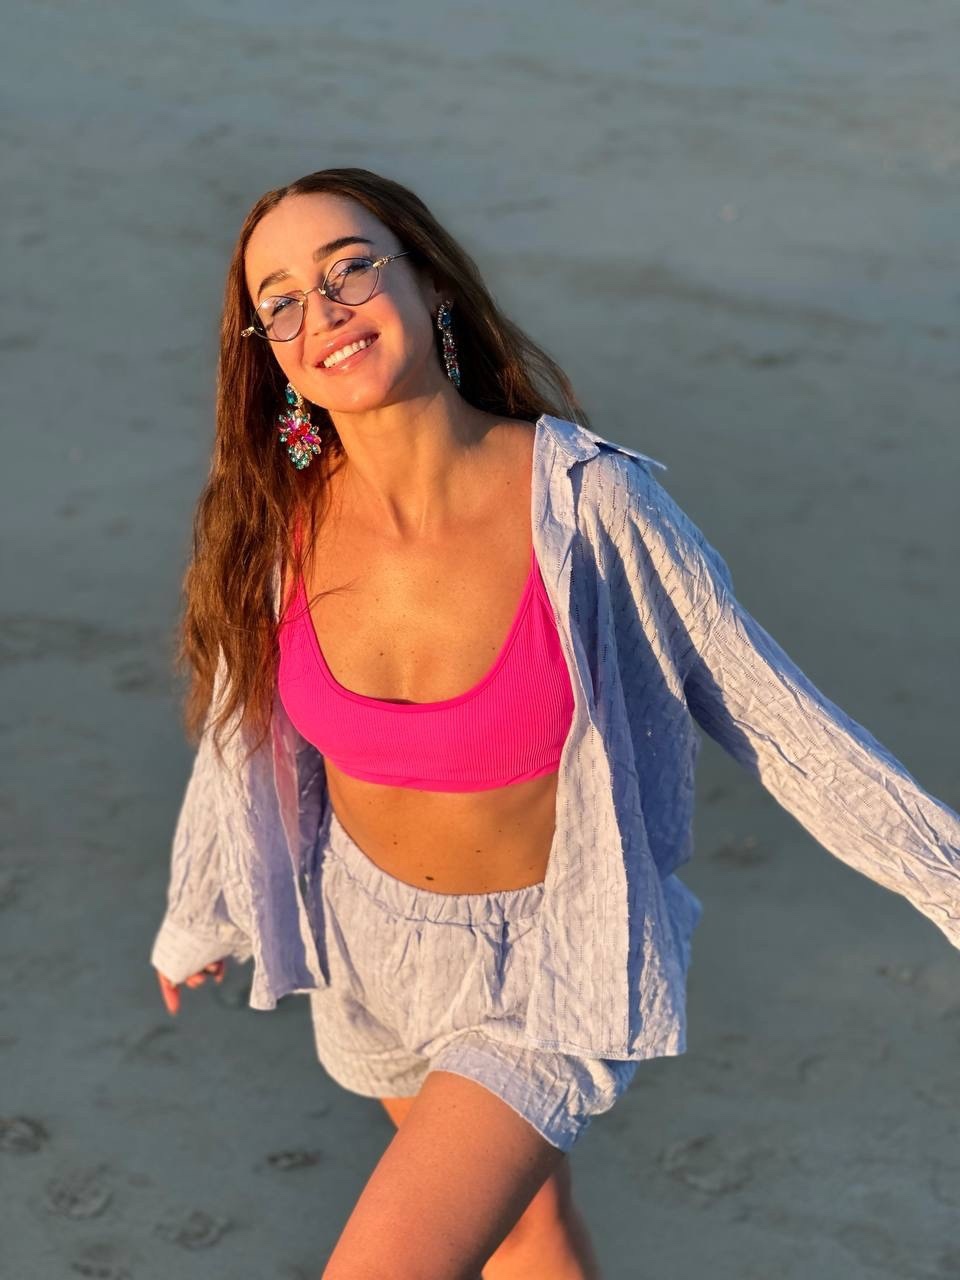 Ольга Бузова устроила пляжную фотосессию в неоновом купальнике